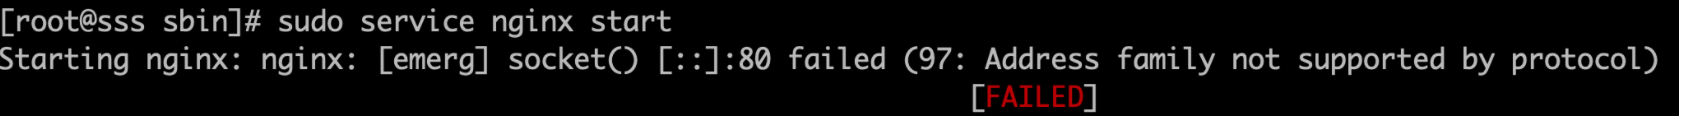 启动nginx报错，80 failed (97: Address family not supported by protocol)